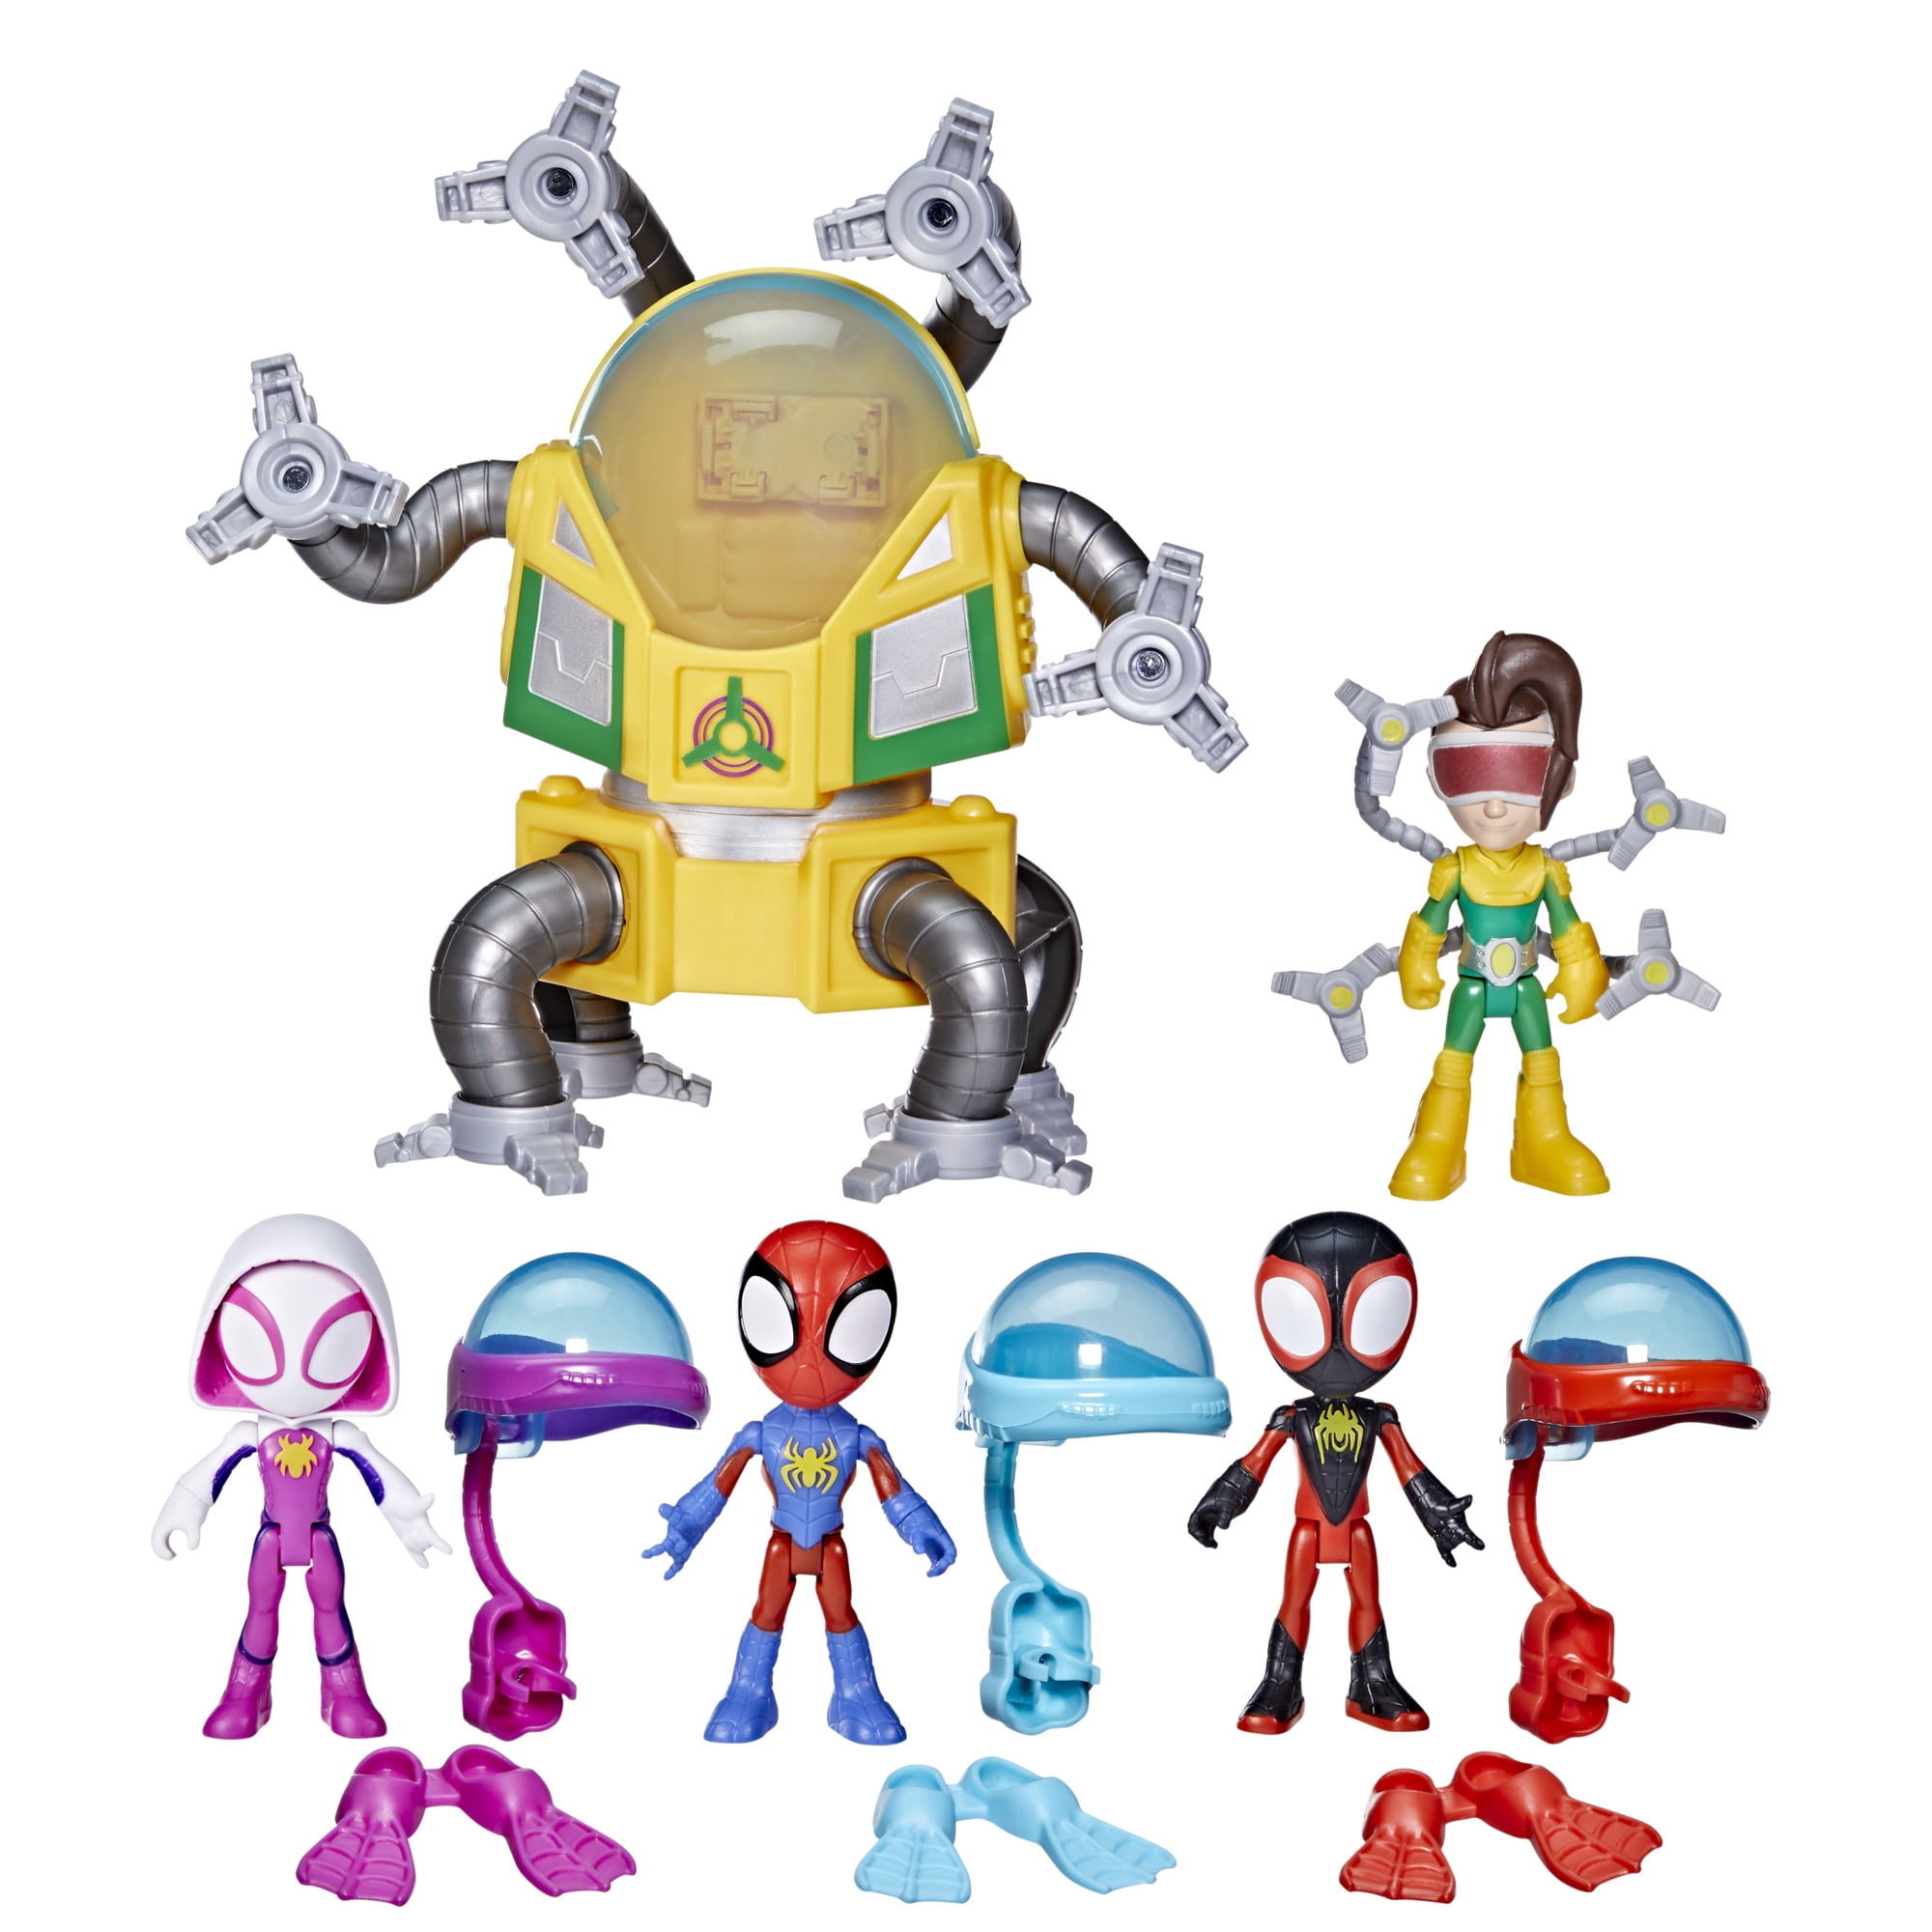 Marvel Spidey and His Amazing Friends Underwater Webs Adventure Action Figures Walmart.com